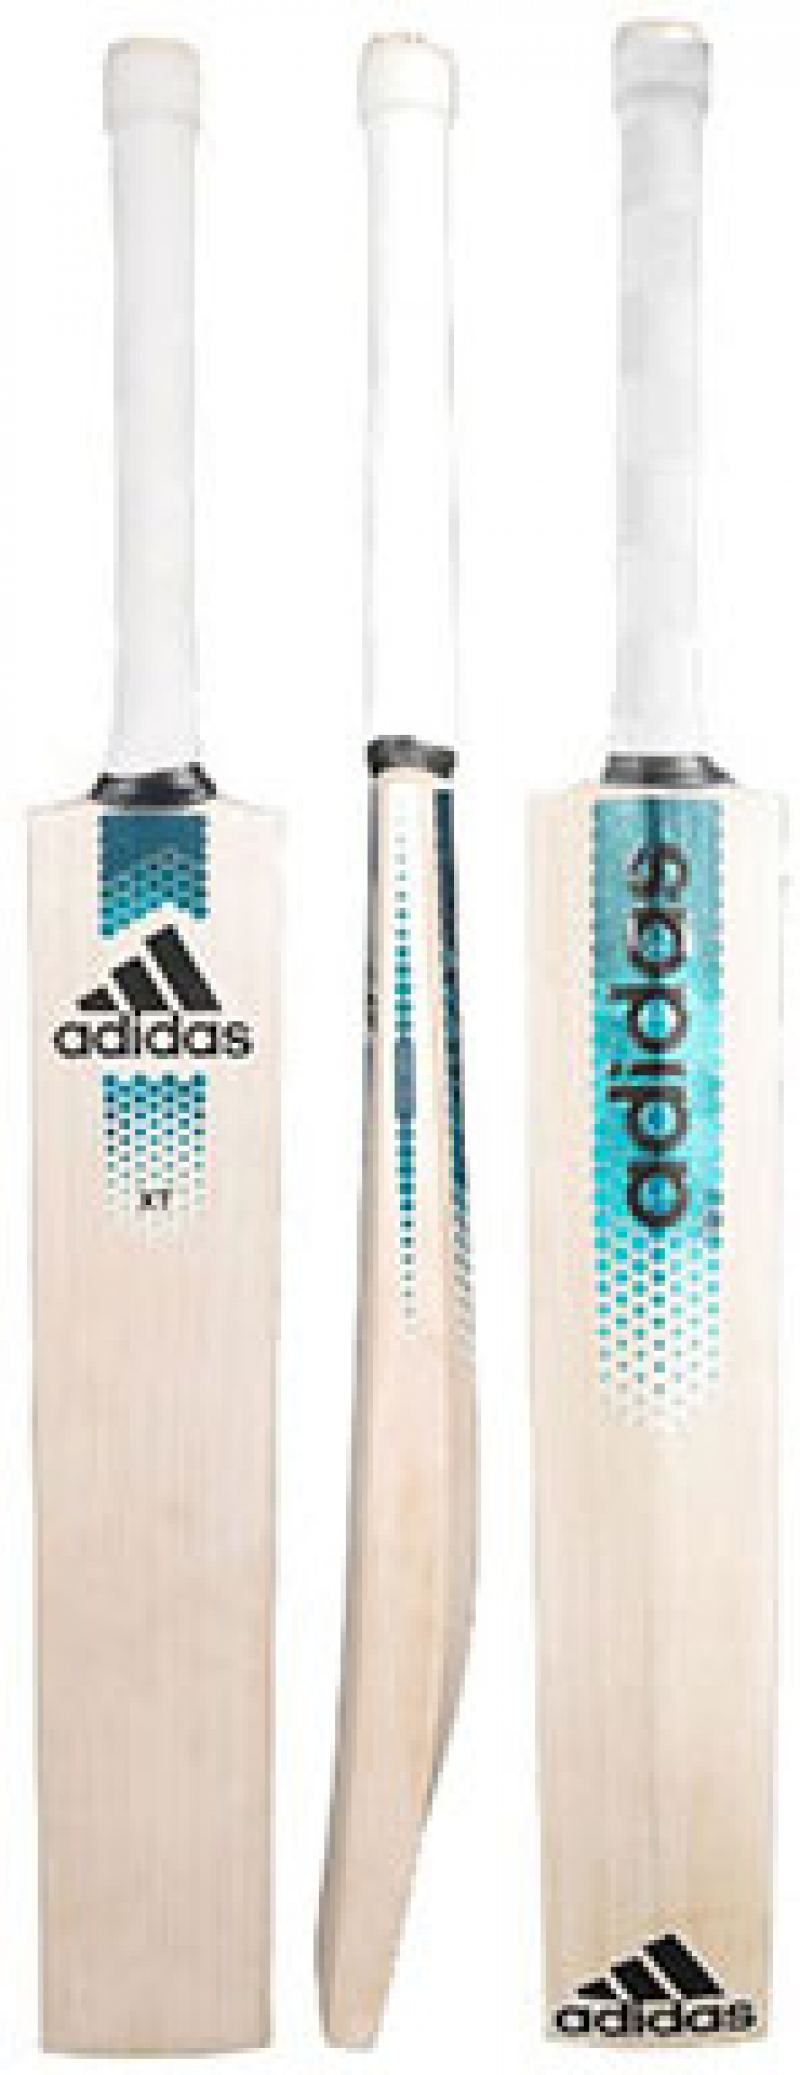 Adidas XT 2.0 Cricket Bat